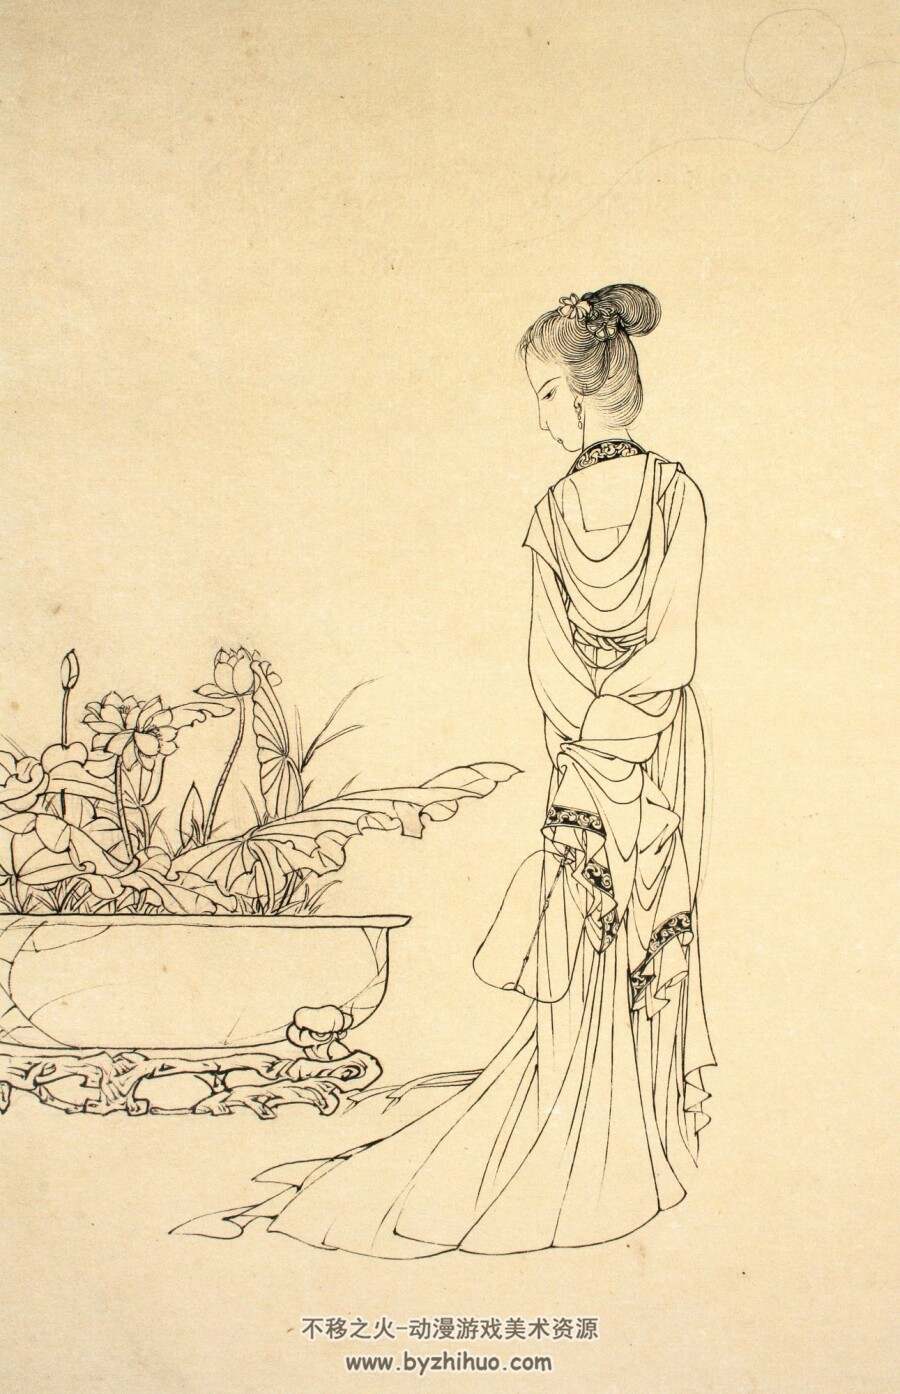 蔡岚工笔人物白描画 中国传统美术资源 百度网盘下载